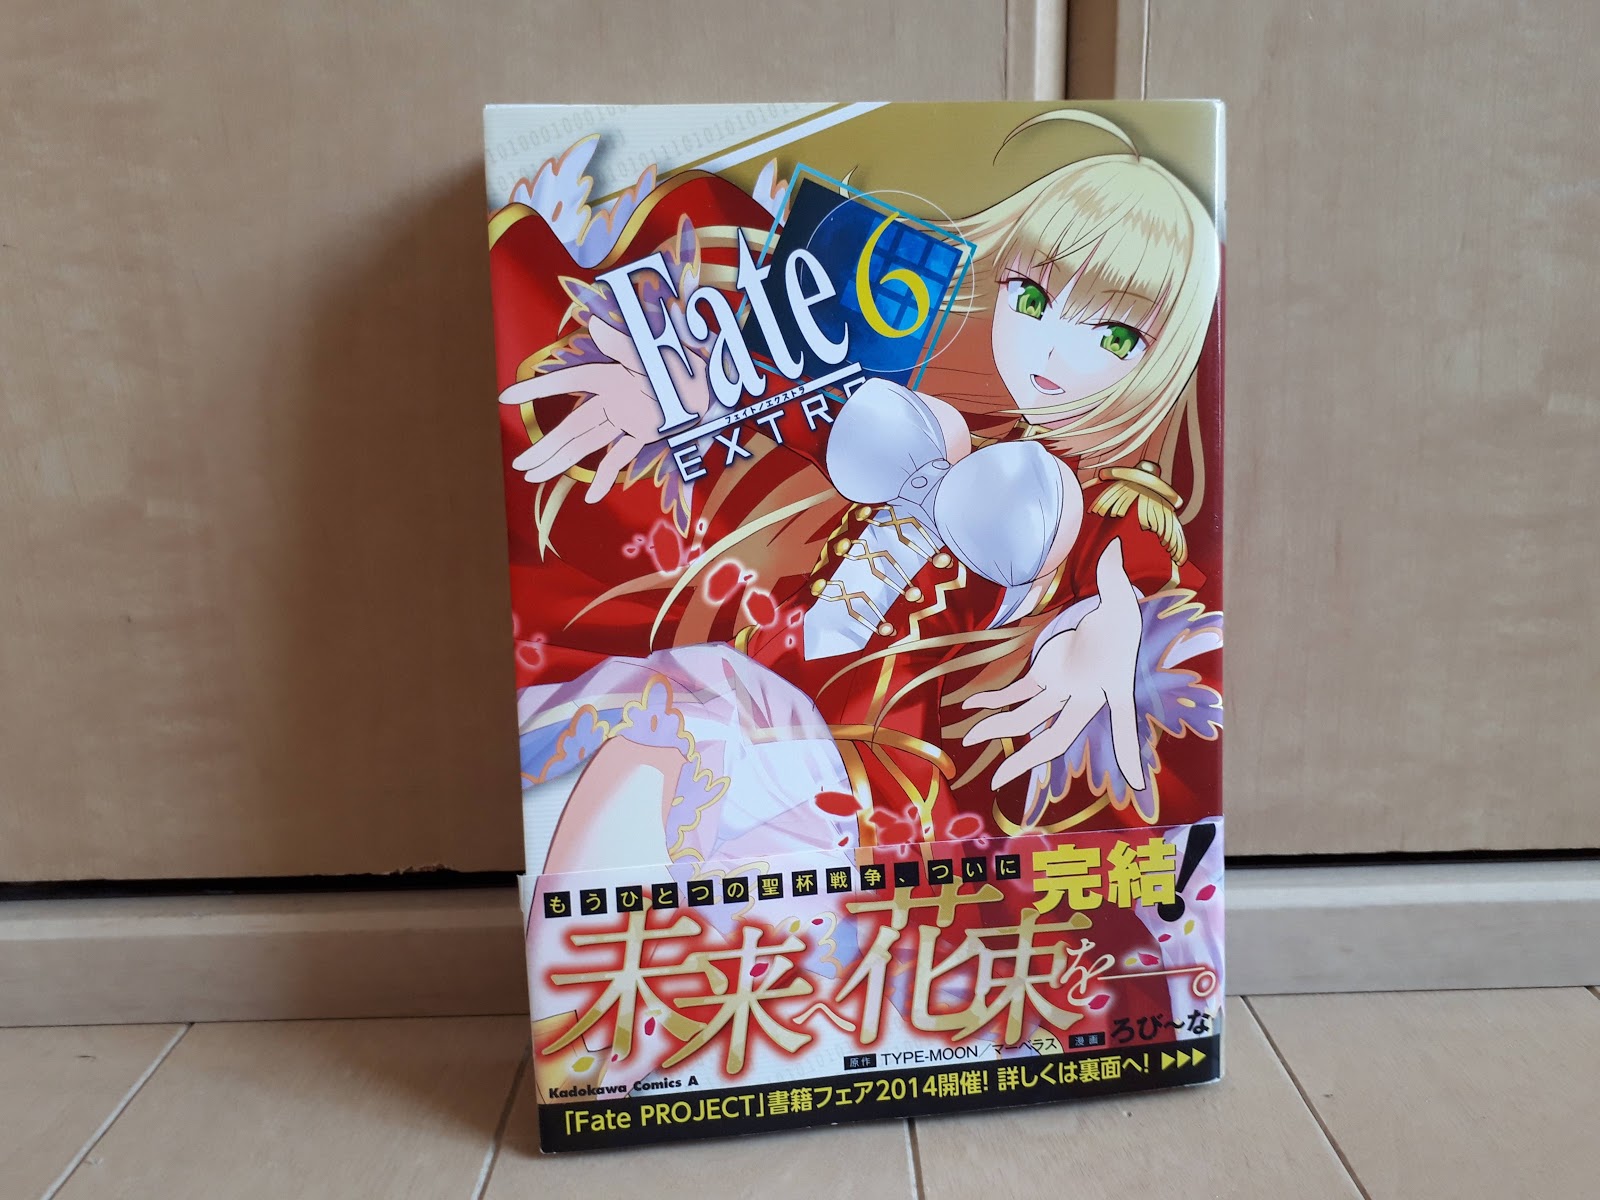 マンガネタバレ感想レビュー Fate Extra フェイト エクストラ 6巻 なま1428のポケモンgo Hobbyworld